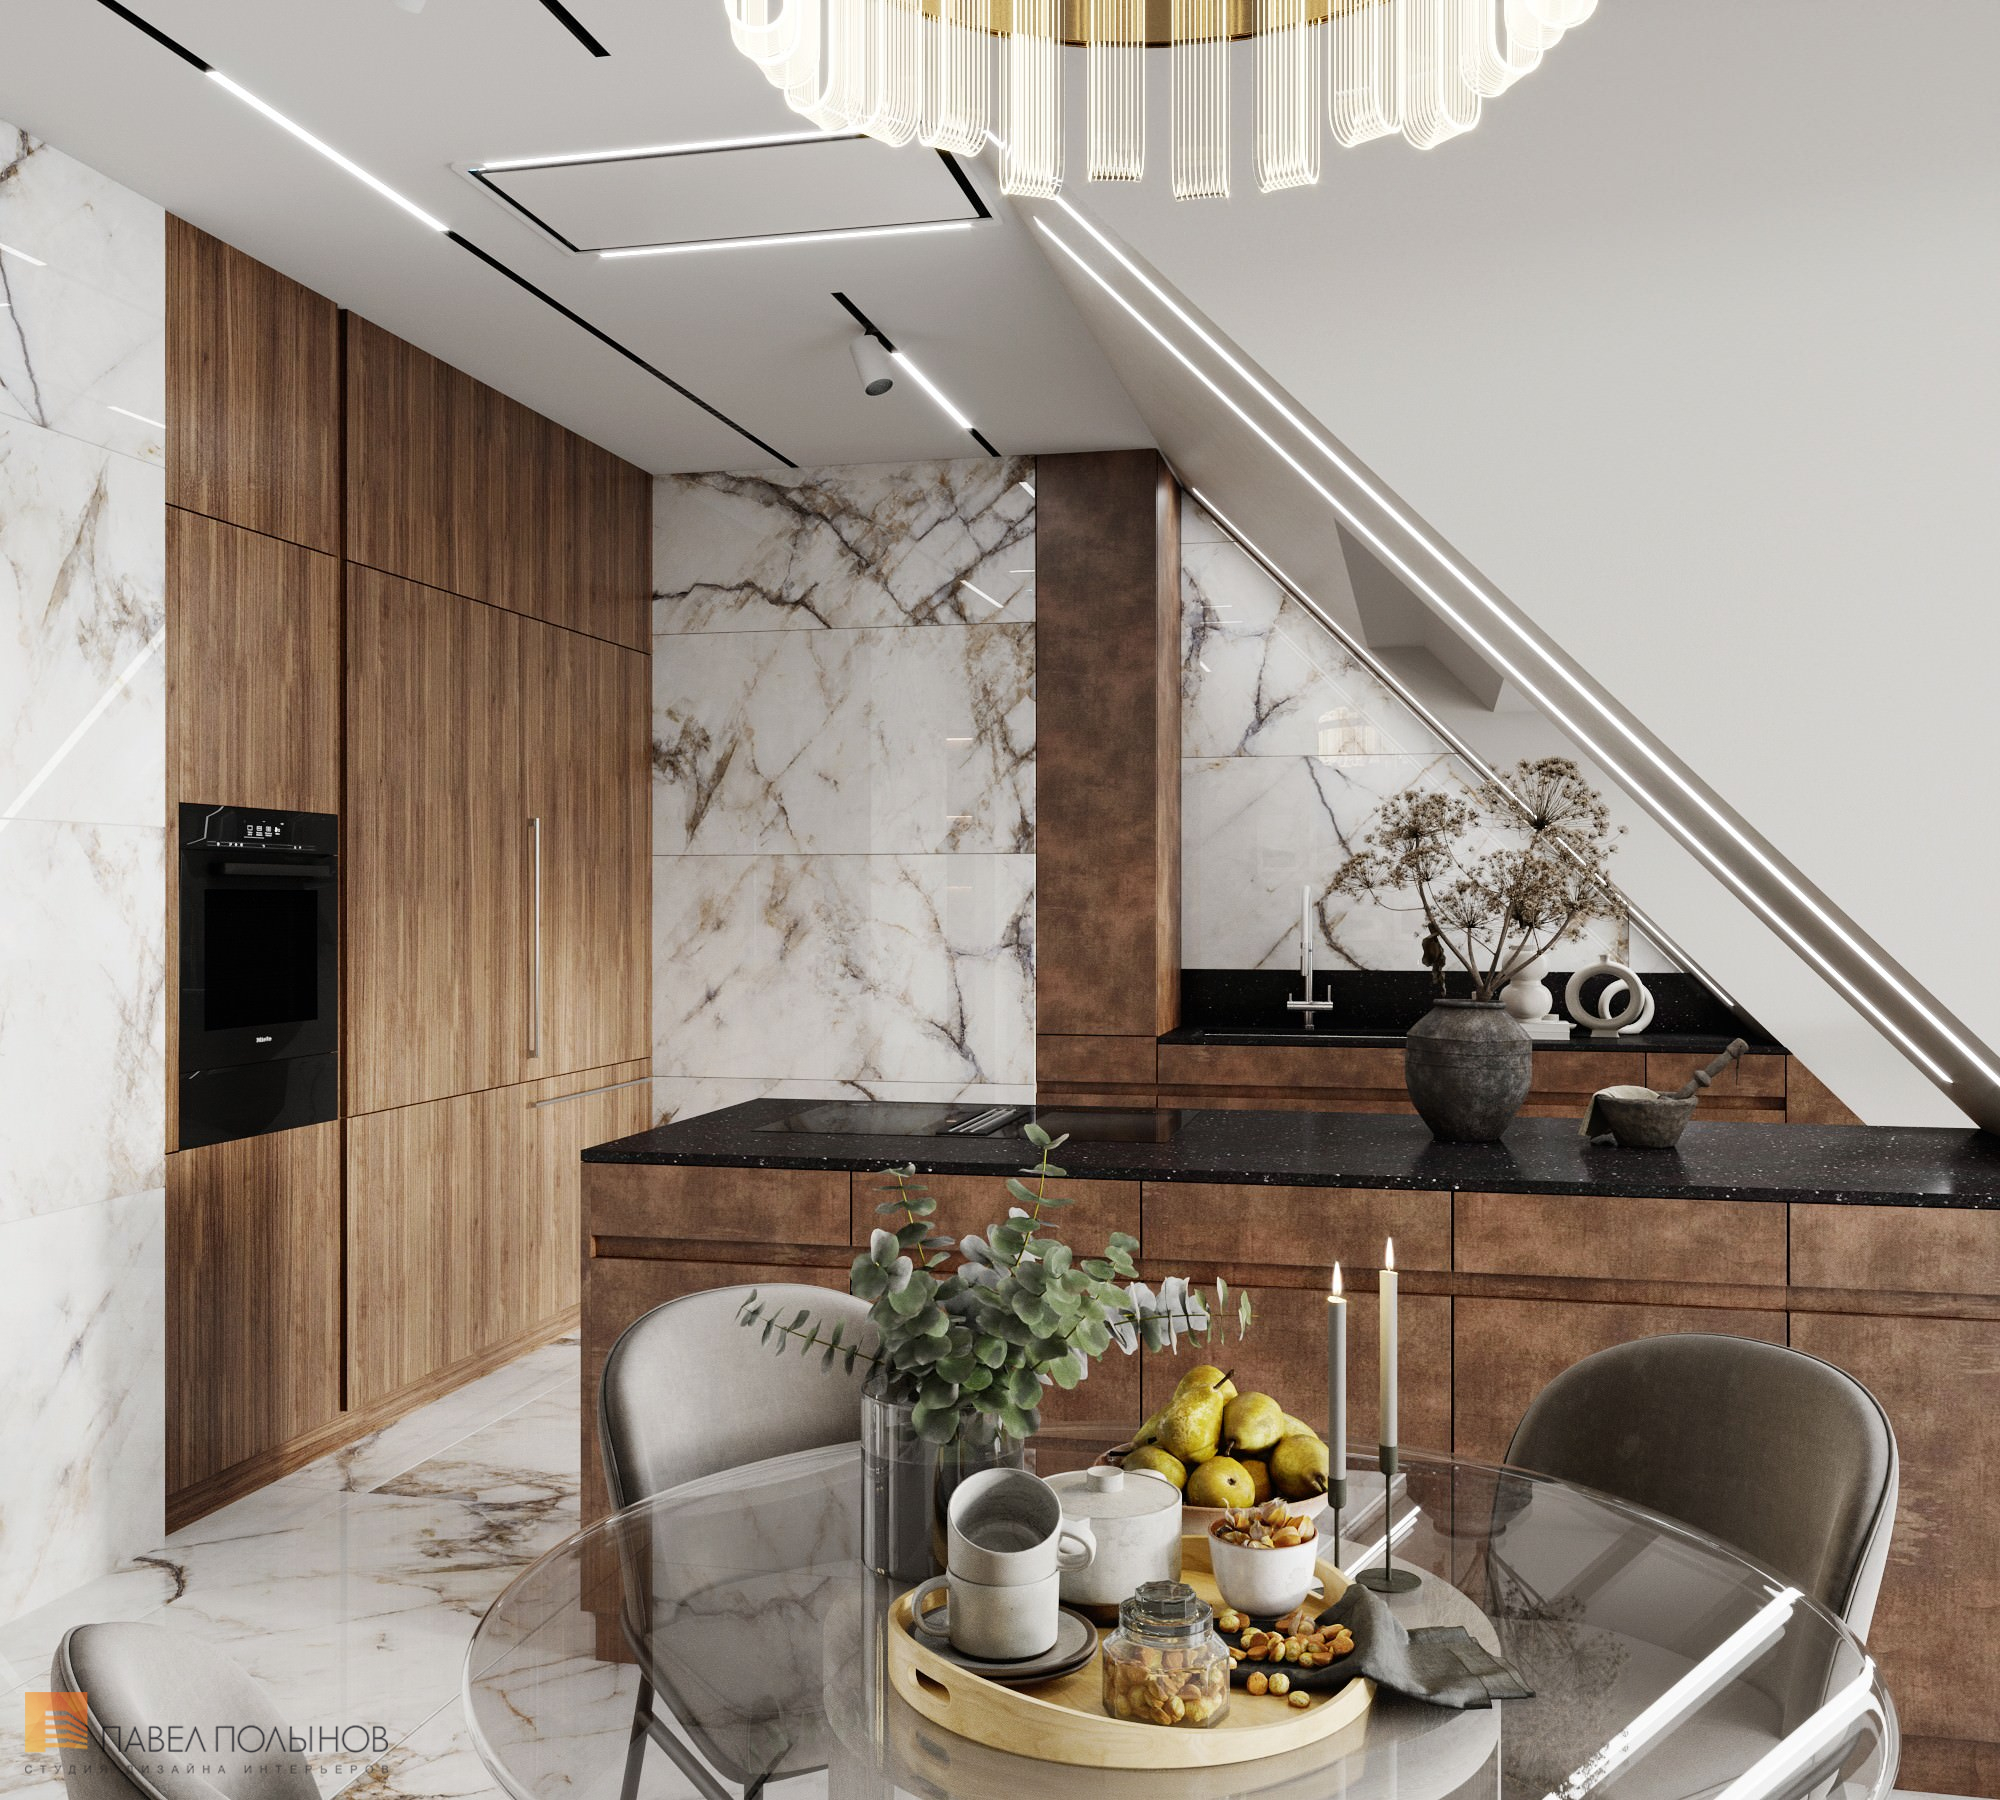 Фото дизайн интерьера кухни из проекта «Интерьер квартиры в современном стиле, 178 кв.м.»